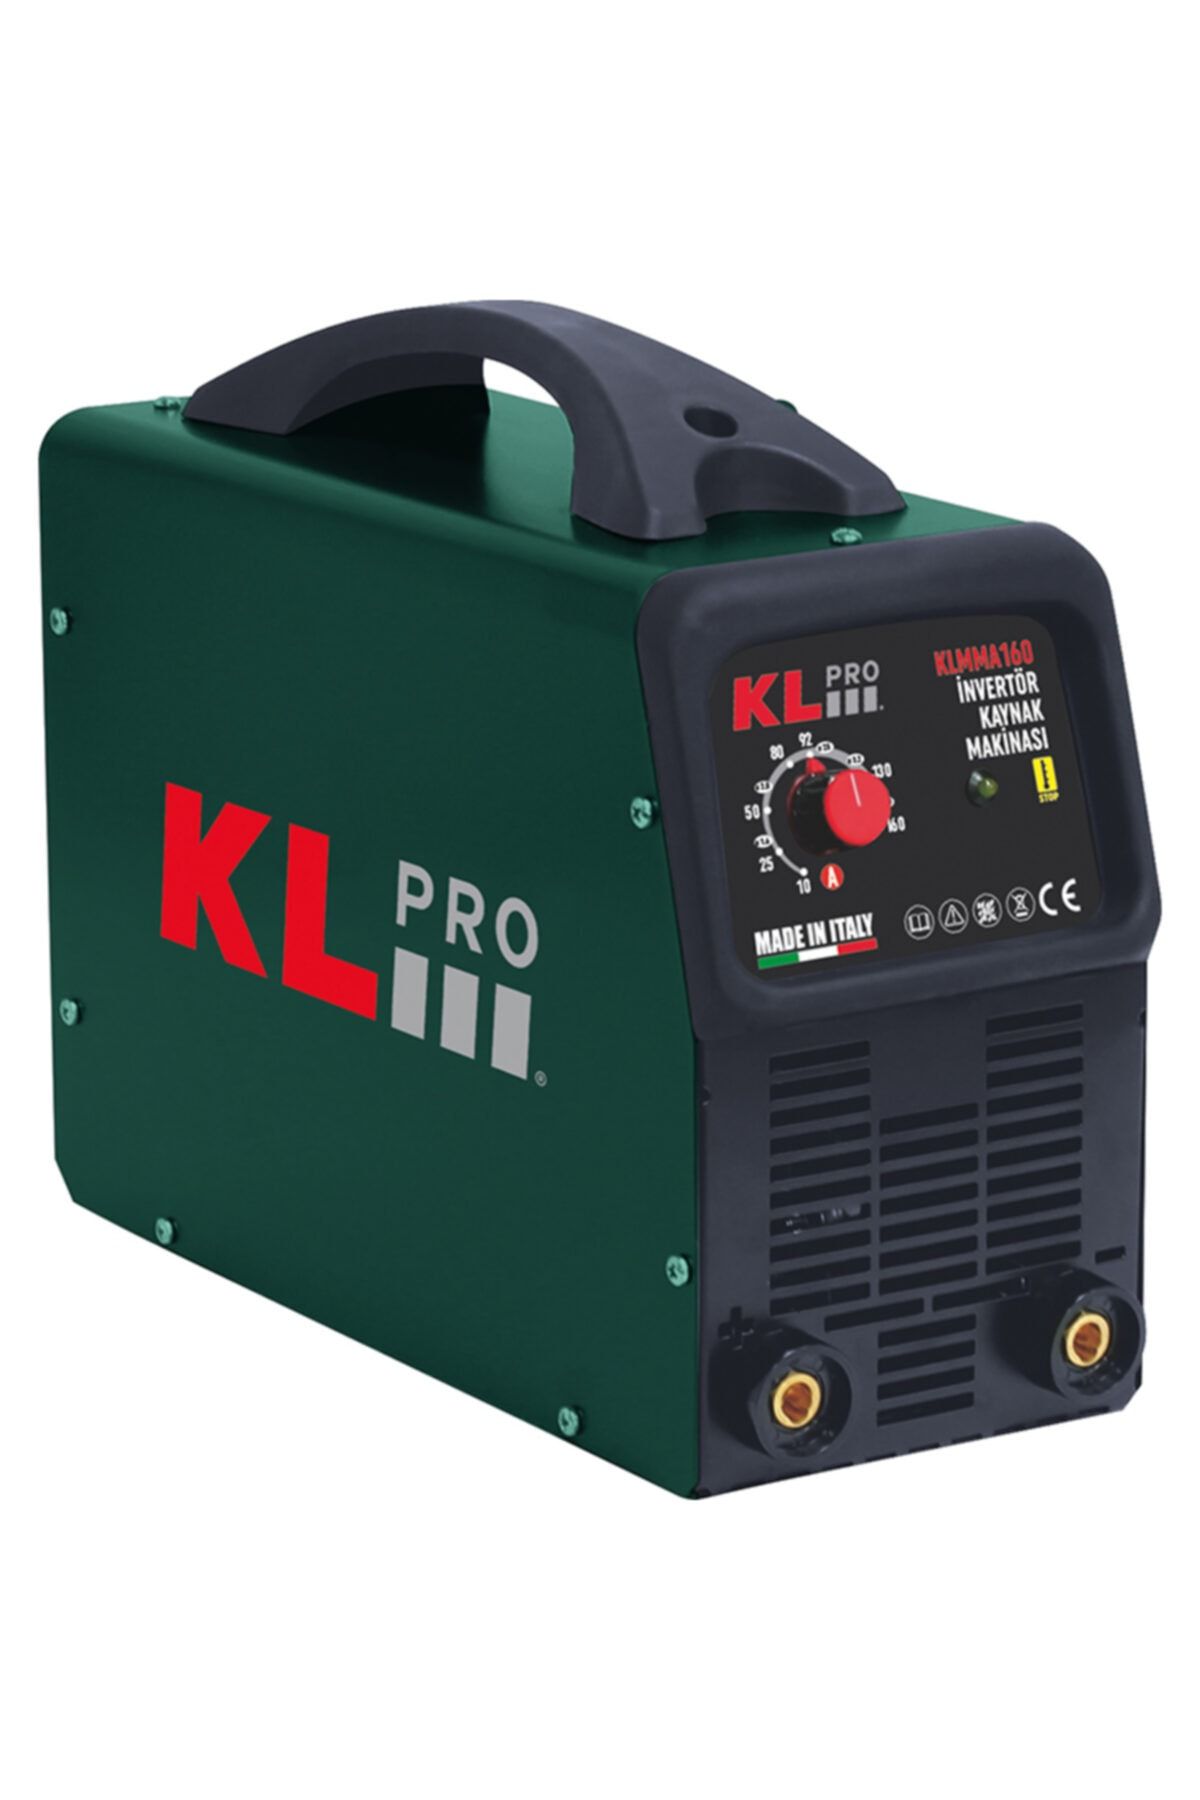 KLPRO Kl Pro Kaynak Makinası Inverter 160 Amper Klmma160